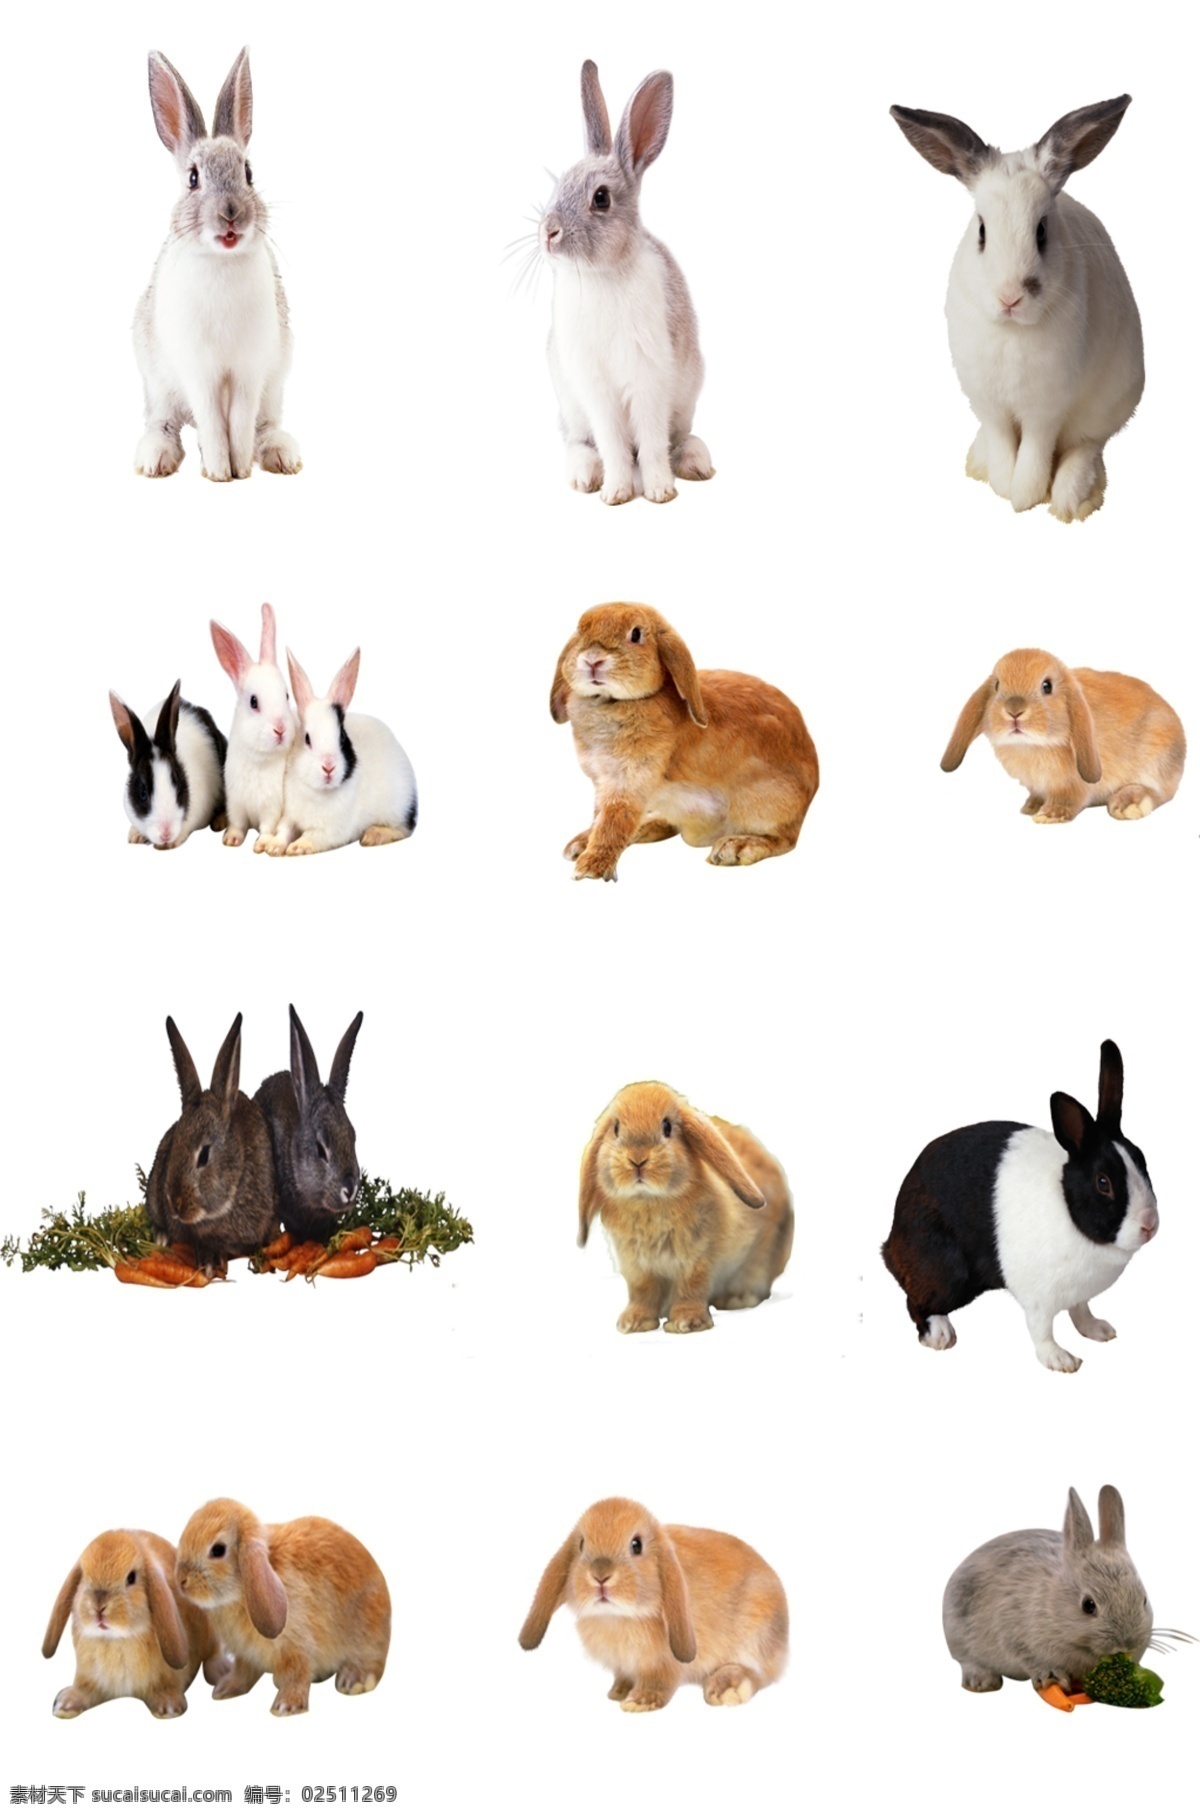 兔子素材图片 卡通兔子 小白兔 兔子 兔 可爱兔子 手绘兔子 宠物 萌宠 森系兔子 q版兔子 插画 手绘 童话动物兔子 背景底纹 底纹边框 矢量图 logo设计